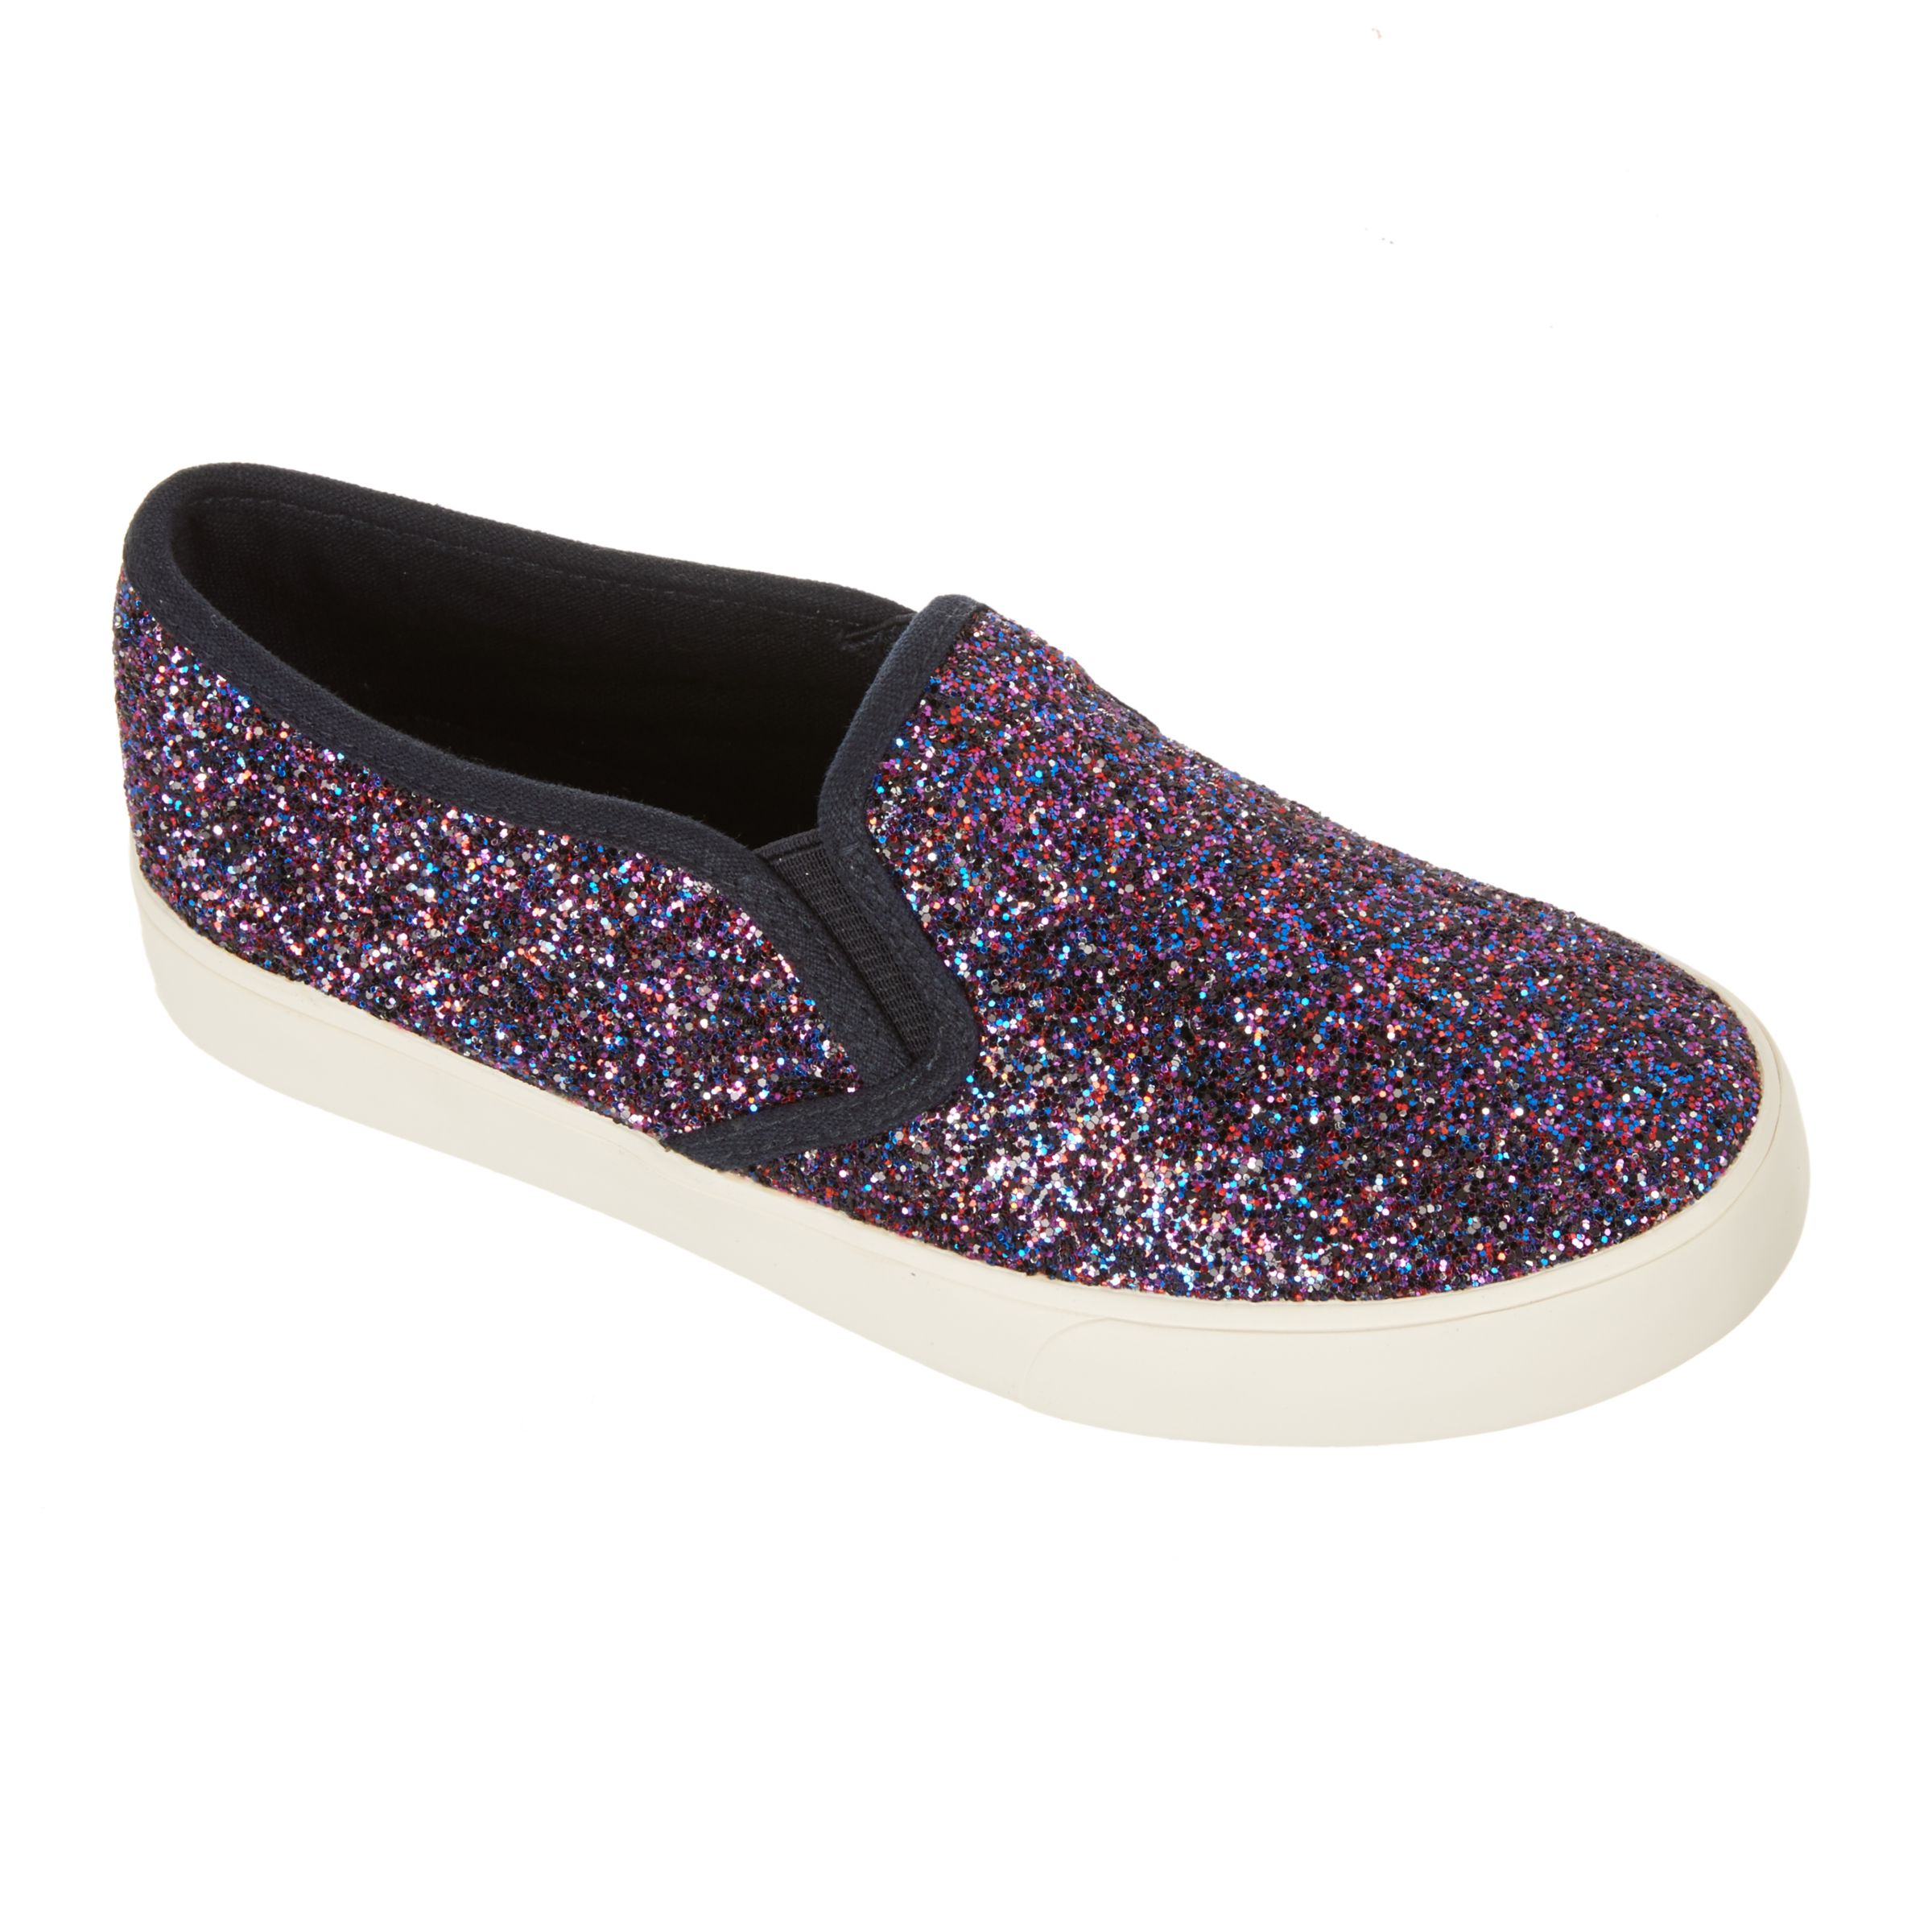 John Lewis & Partners Children's Pheobe Glitter Slip On Shoes, Purple, 10 Jnr